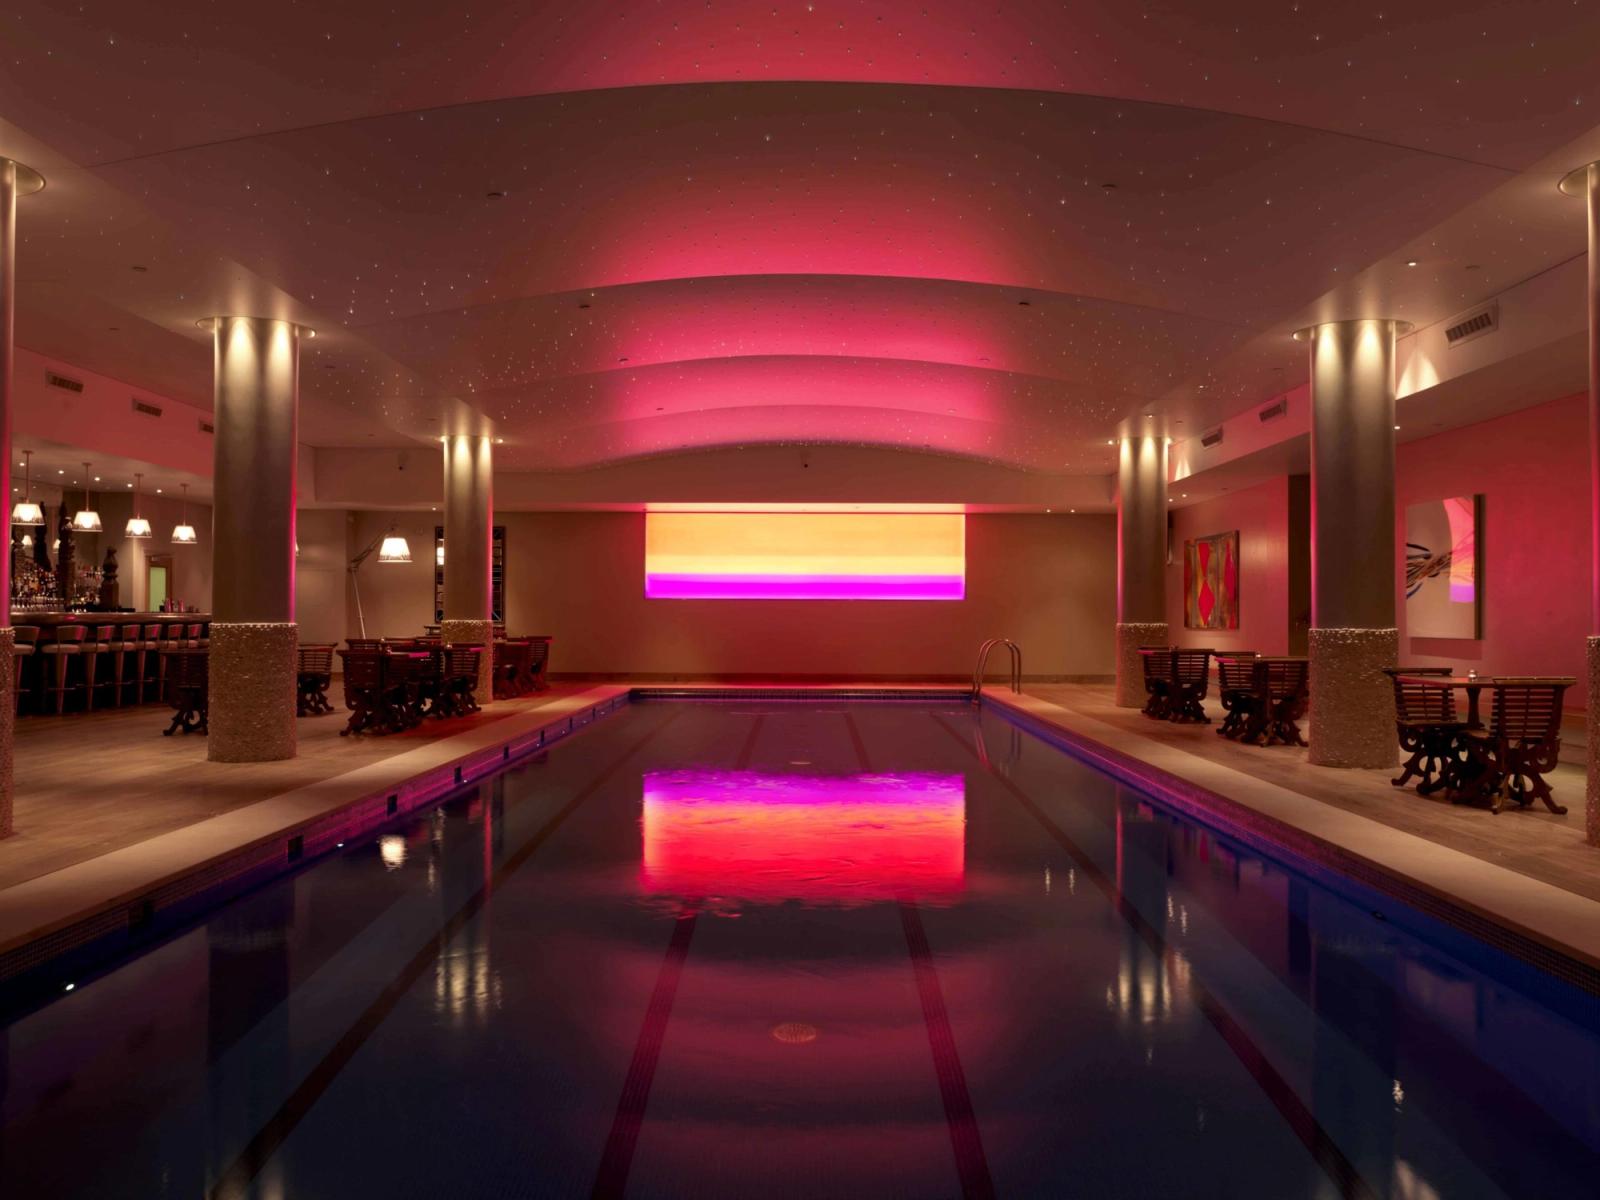 Best spa hotels in London